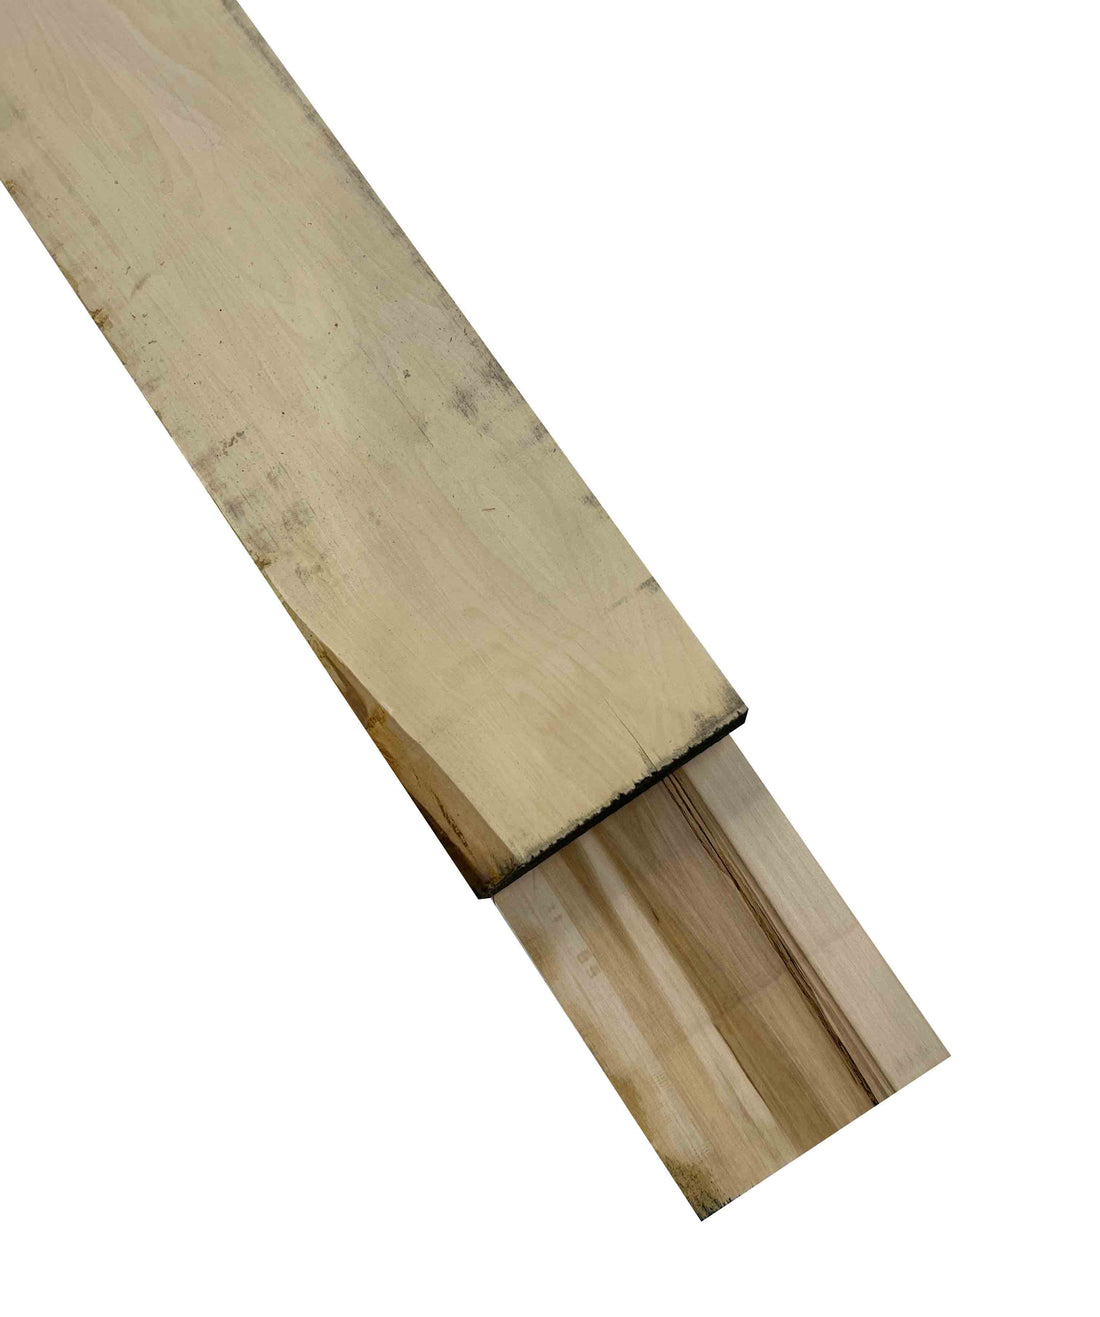 Premium American Hardwood 16/4 Basswood Lumber - Exotic Wood Zone - Buy online Across USA 